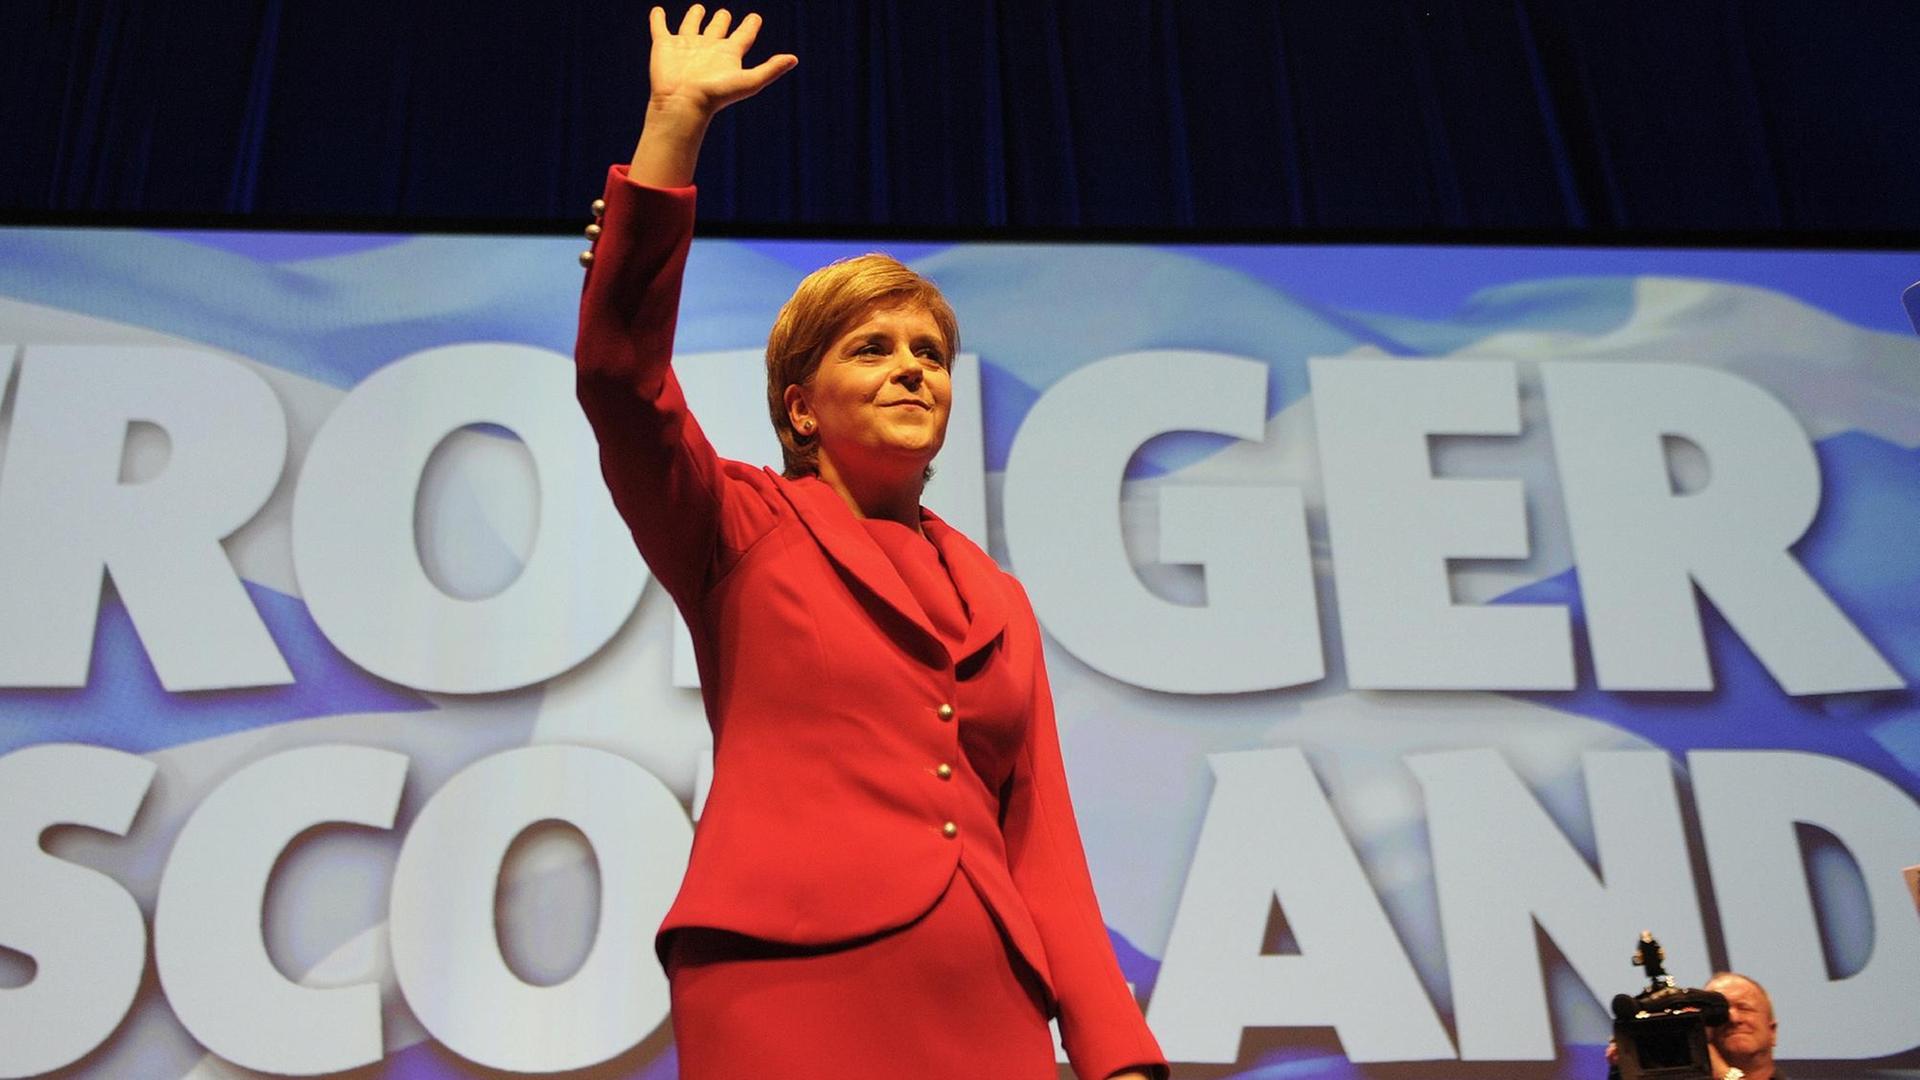 Das Bild zeigt Schottlands Regierungschefin Nicola Sturgeon auf dem SNP-Parteitag am 15.10.2016 in Glasgow. Sie trägt ein rotes Kleid und winkt mit der rechten Hand den Delegierten zu. Hinter ihr geschrieben steht "Stronger Scotland - ein stärkerers Schottland".